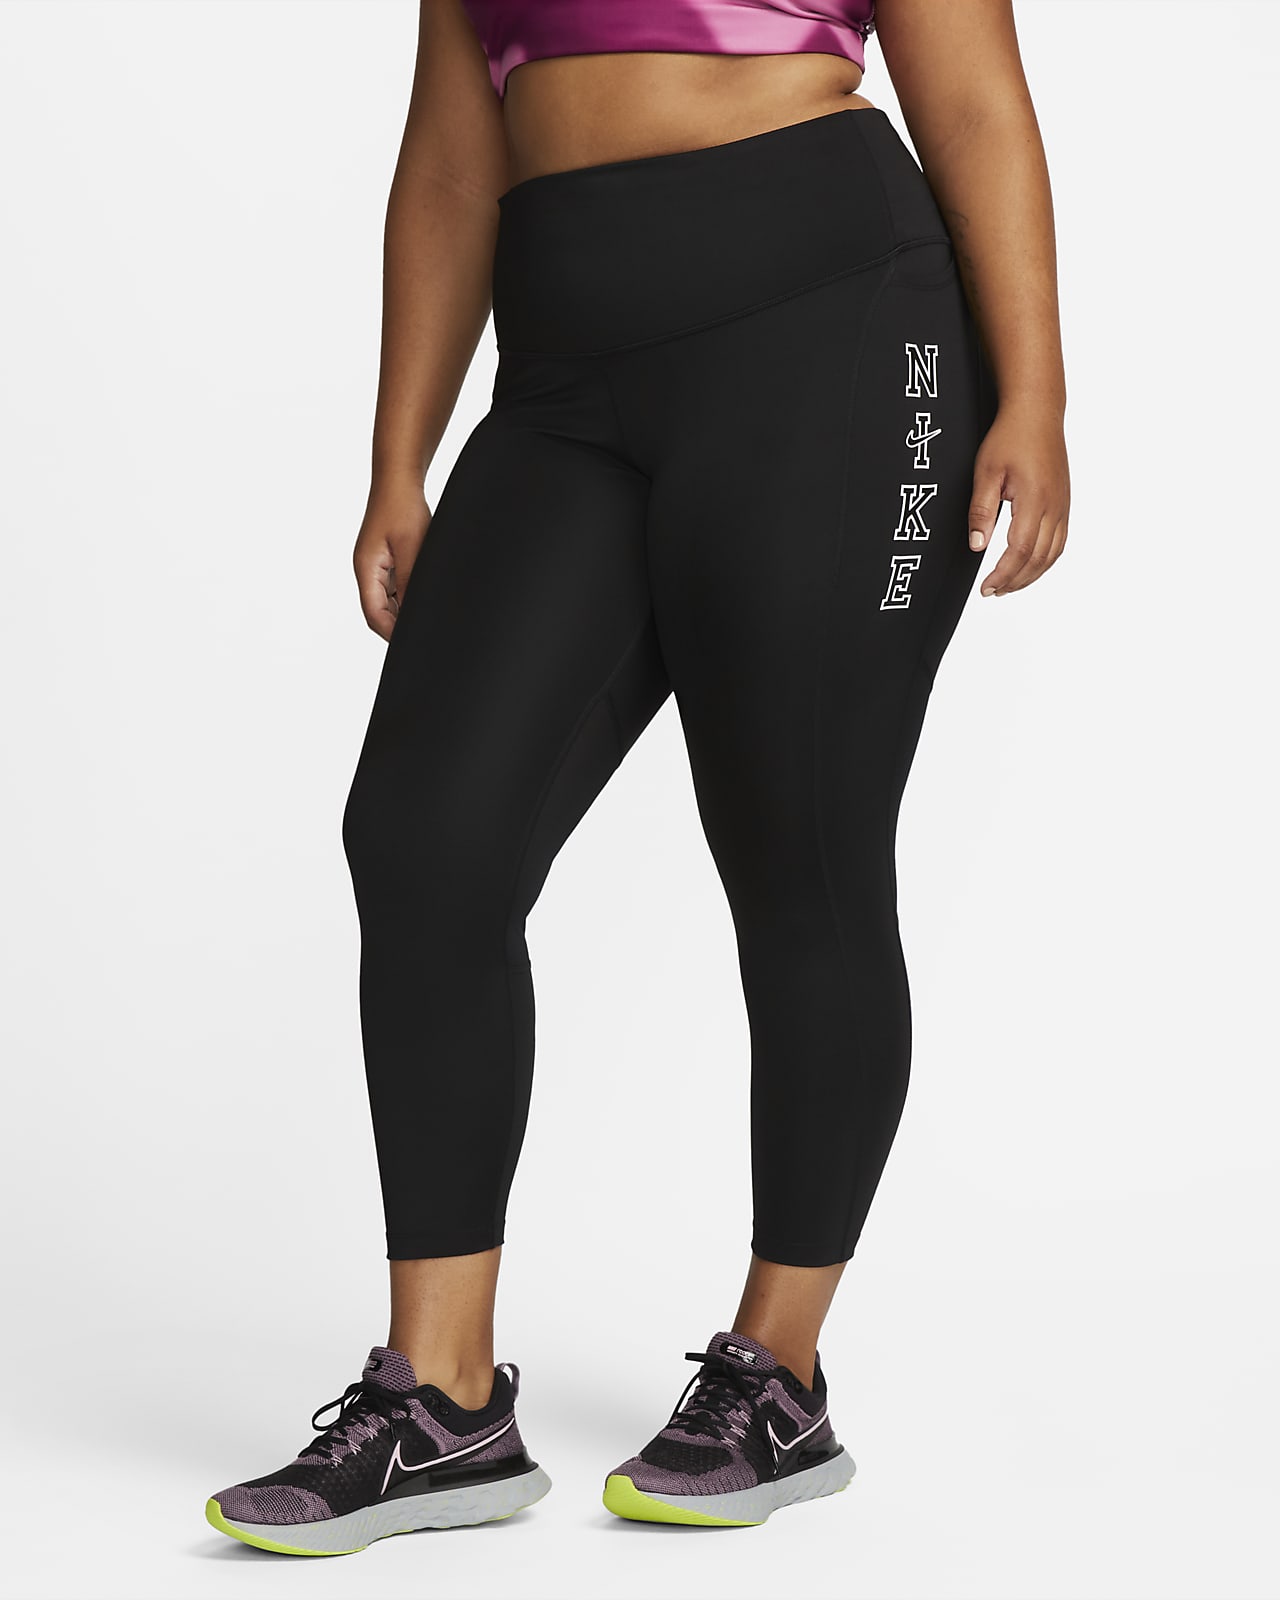 Nike Epic Fast középmagas szabású női futóleggings (plus size méret)